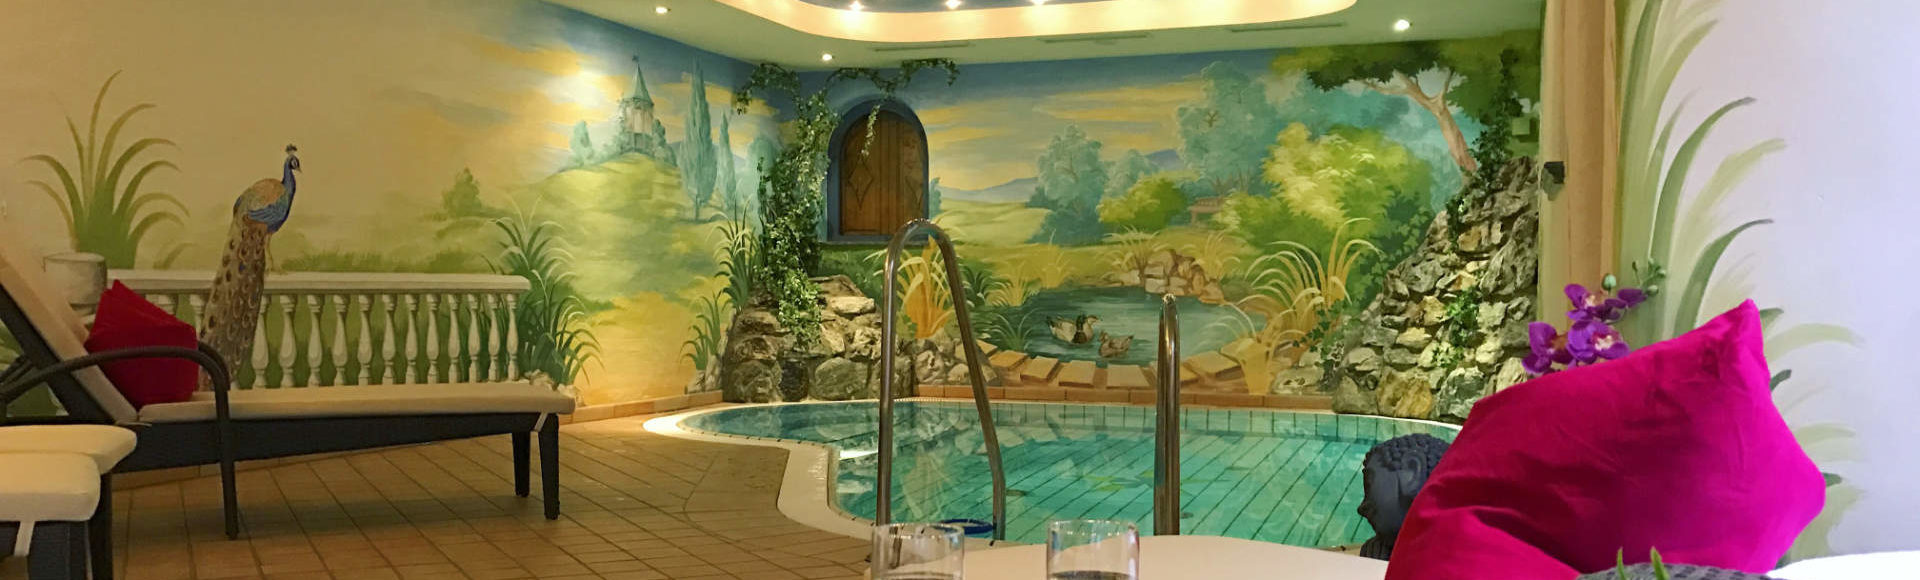 Erlebnis-Pool · Wellness in Andis Skihotel in Obertauern